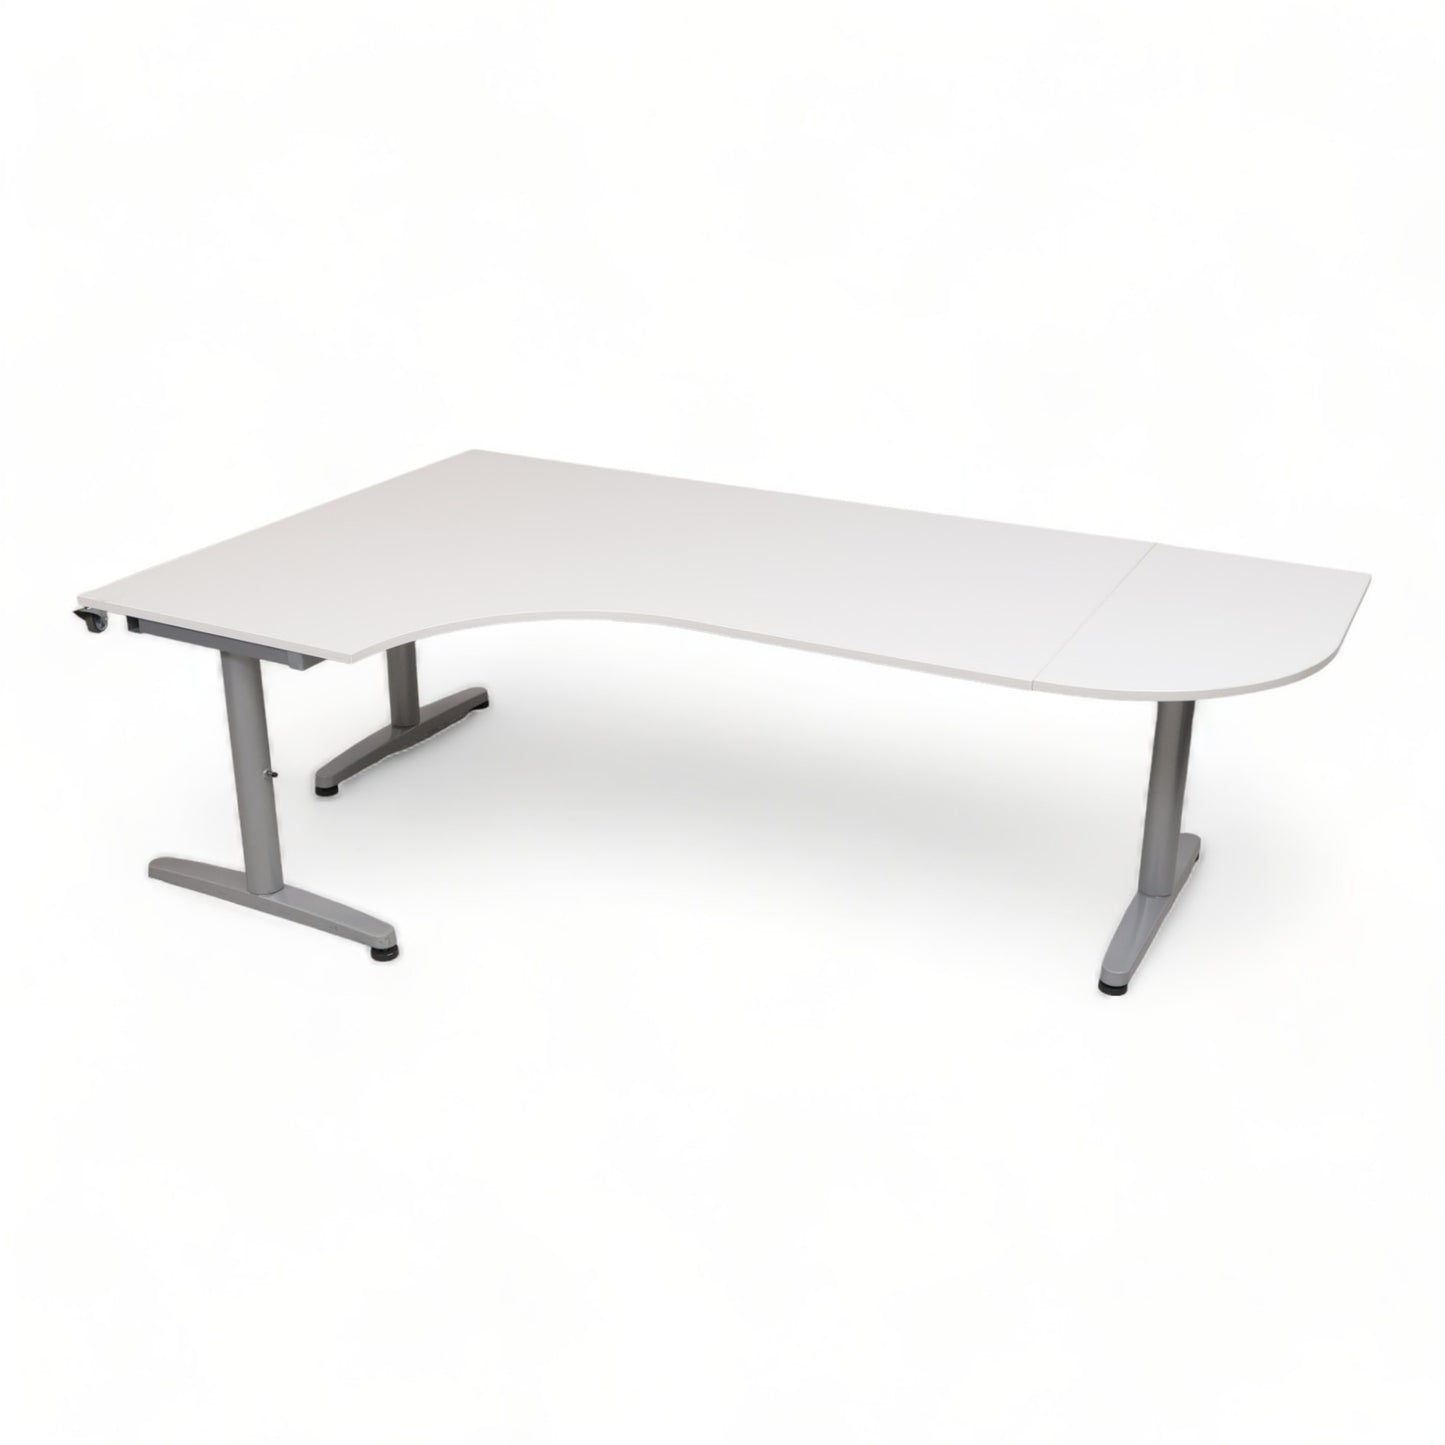 Kvalitetssikret | 200x120 cm, IKEA Galant hjørneskrivebord